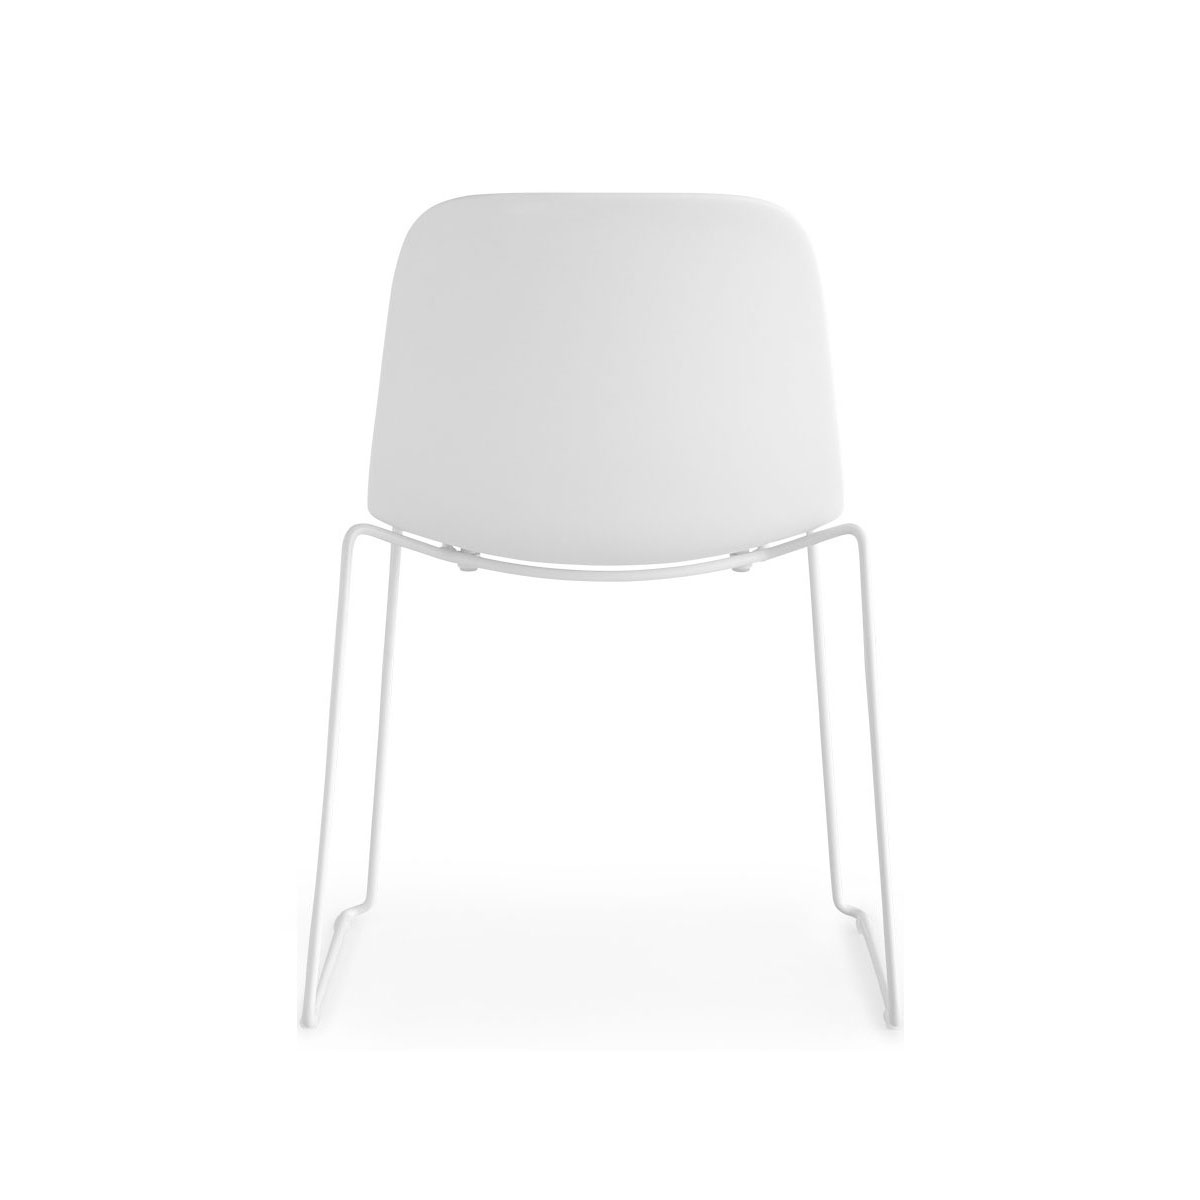 la palma - Seela S310 Stuhl Kufengestell Weiß - weiß, eiche/Sitzfläche Eiche gebleicht/BxHxT 54x79x53cm/Gestell weiß lackiert von la palma